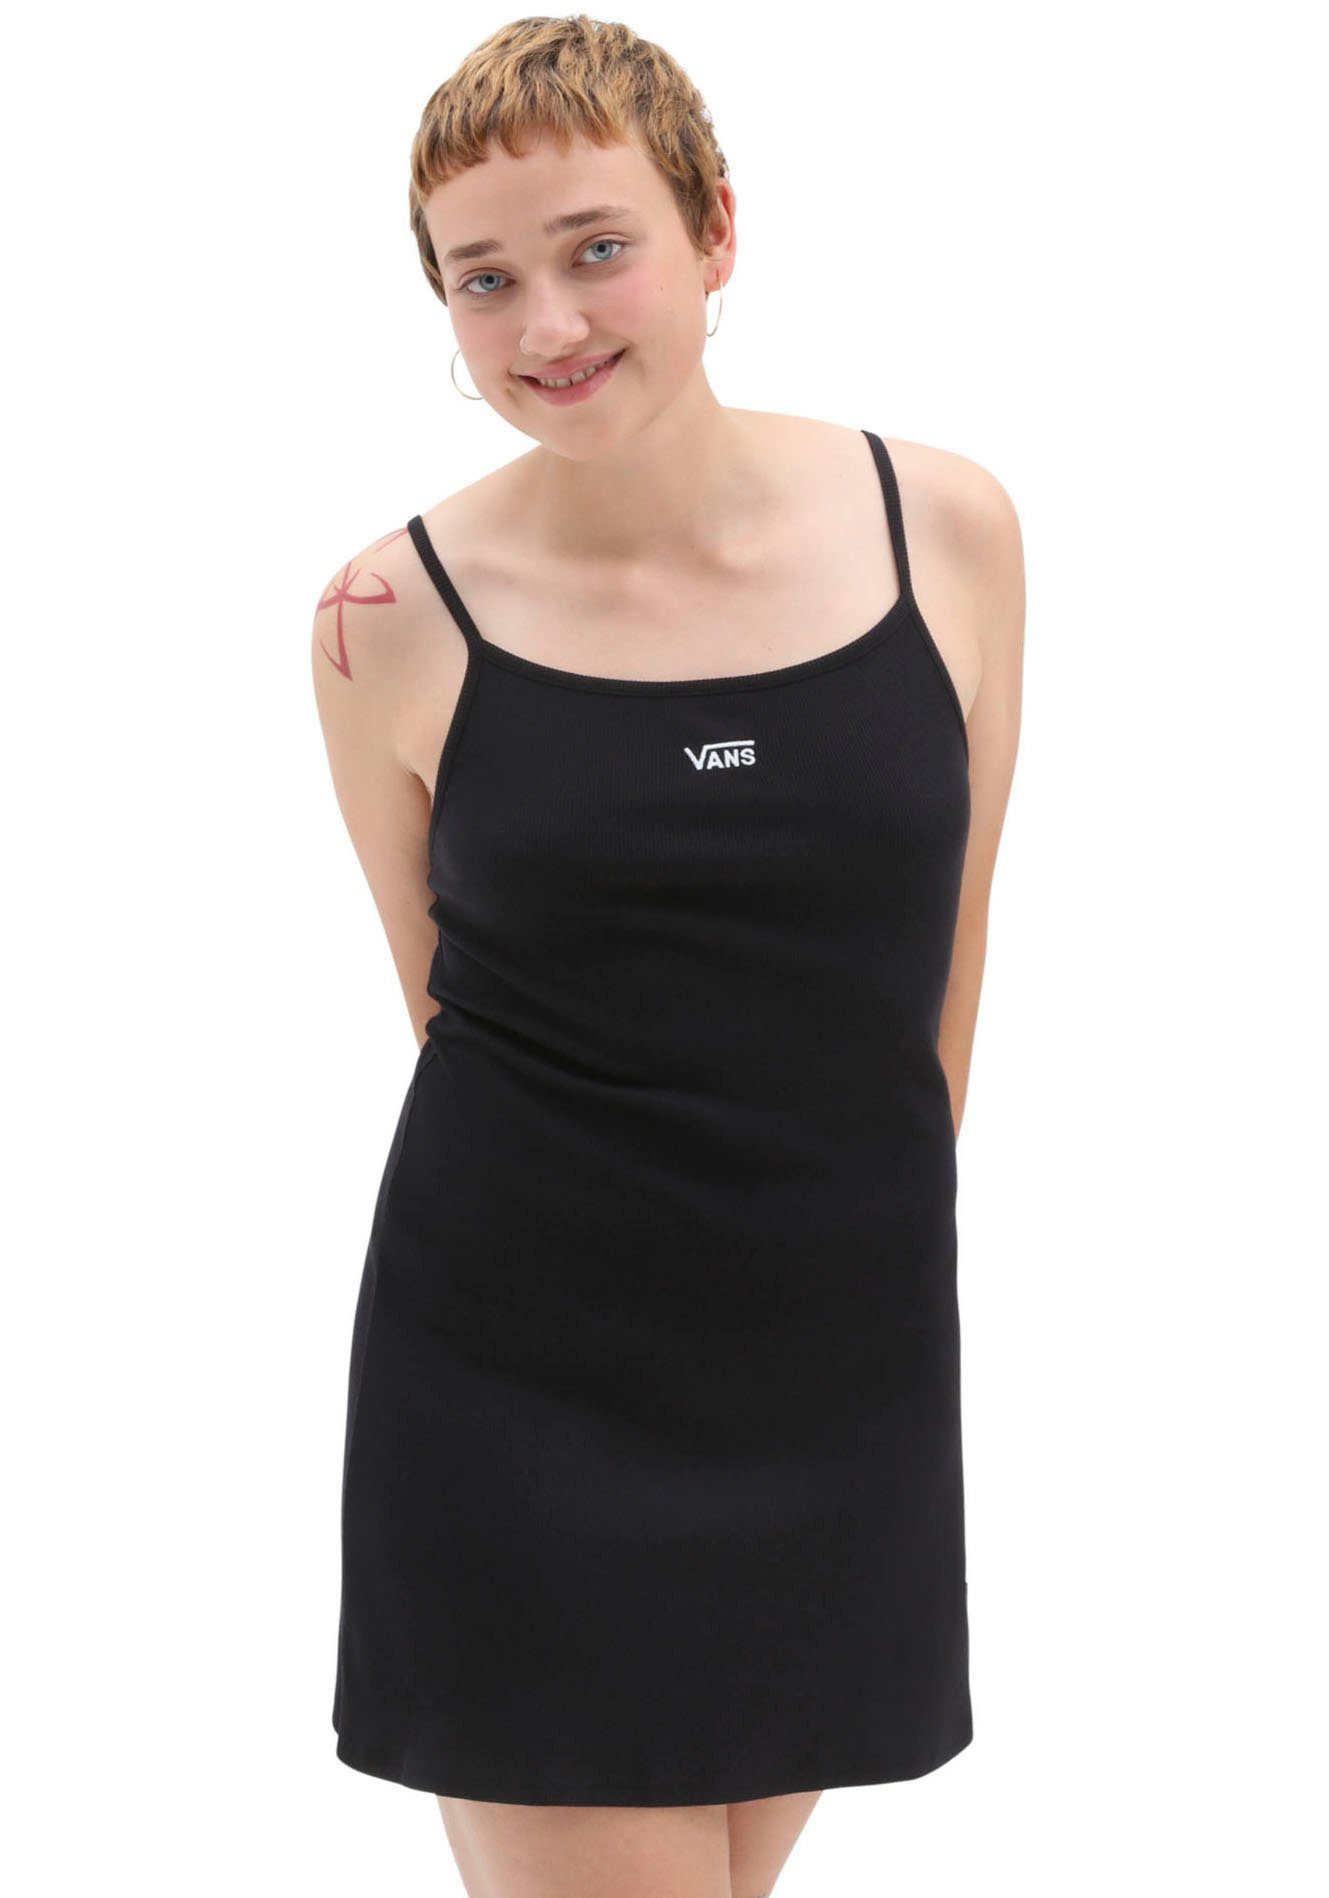 JESSIE Vans DRESS black/white Sommerkleid